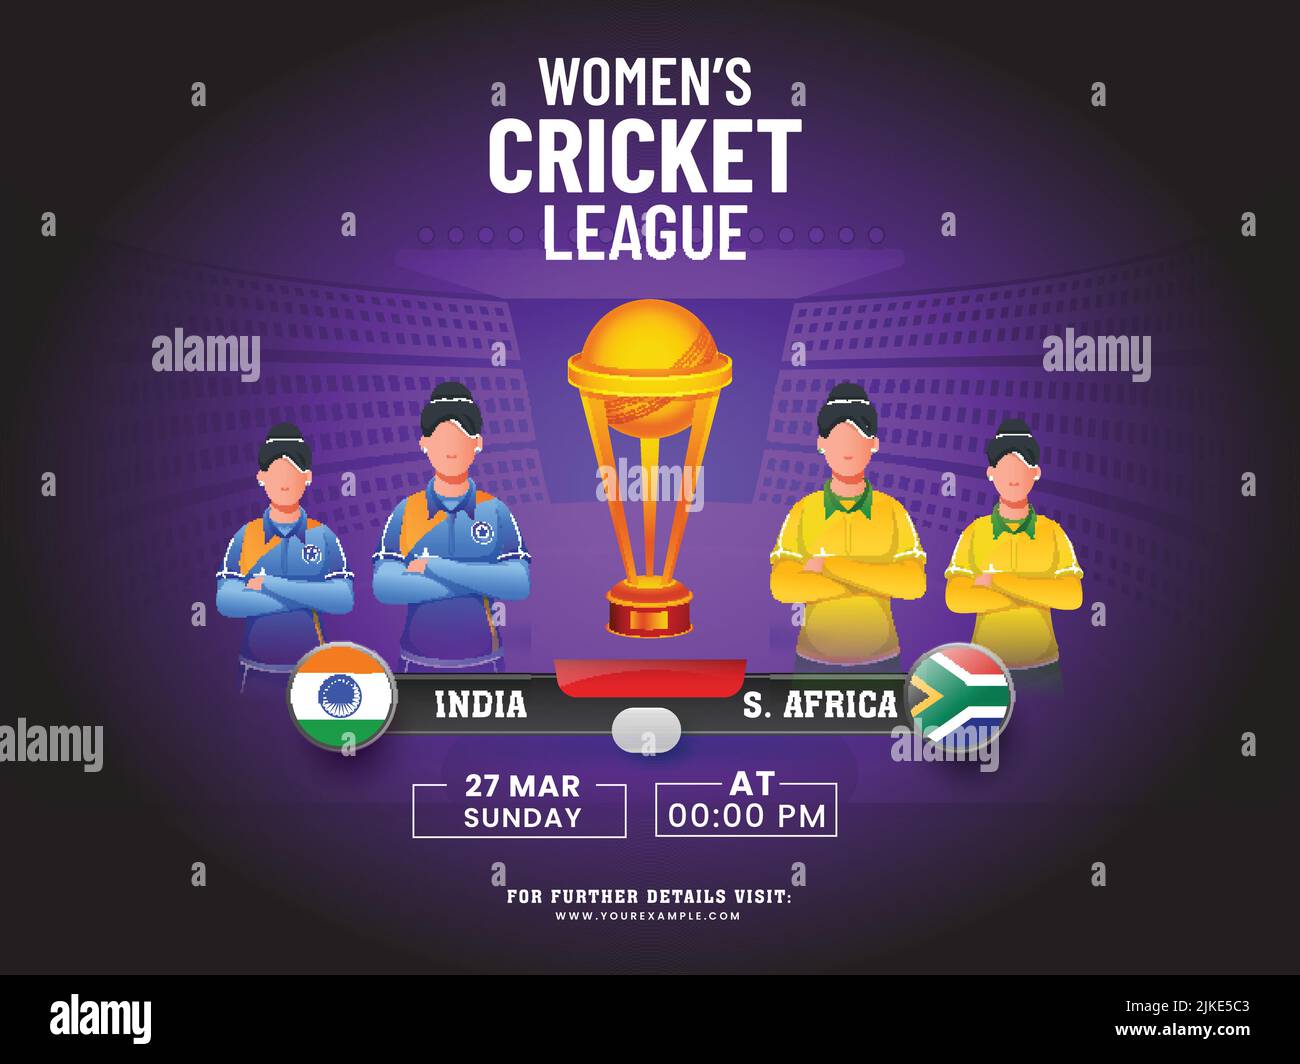 Frauen-Cricket-Match zwischen Indien und Südafrika mit gesichtslosen weiblichen Spielern, Gewinner des Trophy Cup 3D auf dem Hintergrund des Purple und Black Stadions. Stock Vektor